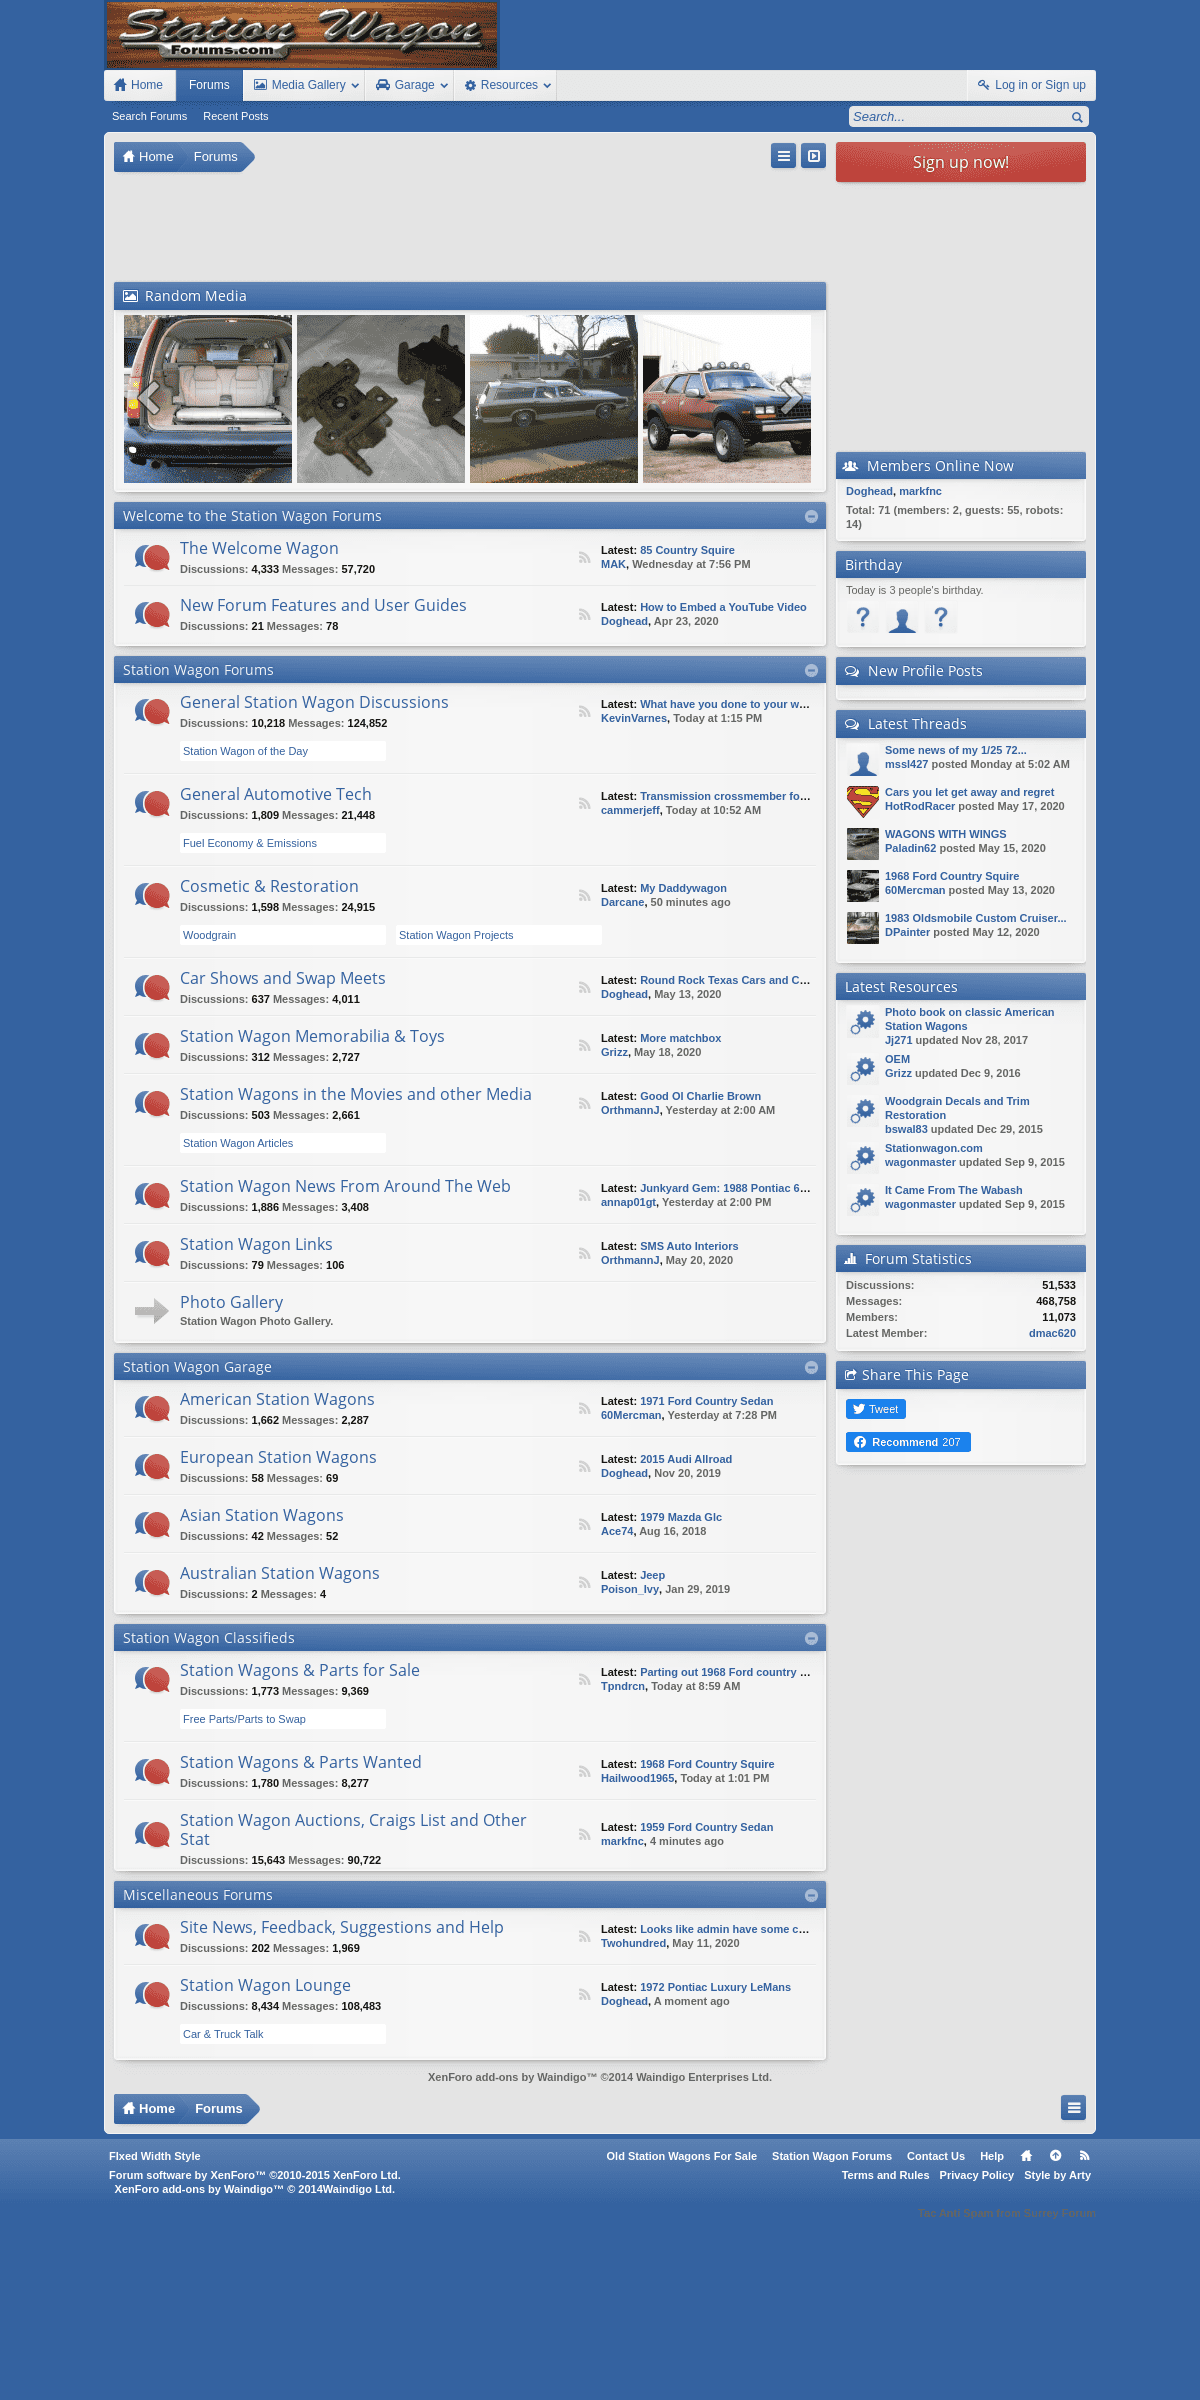 A complete backup of stationwagonforums.com